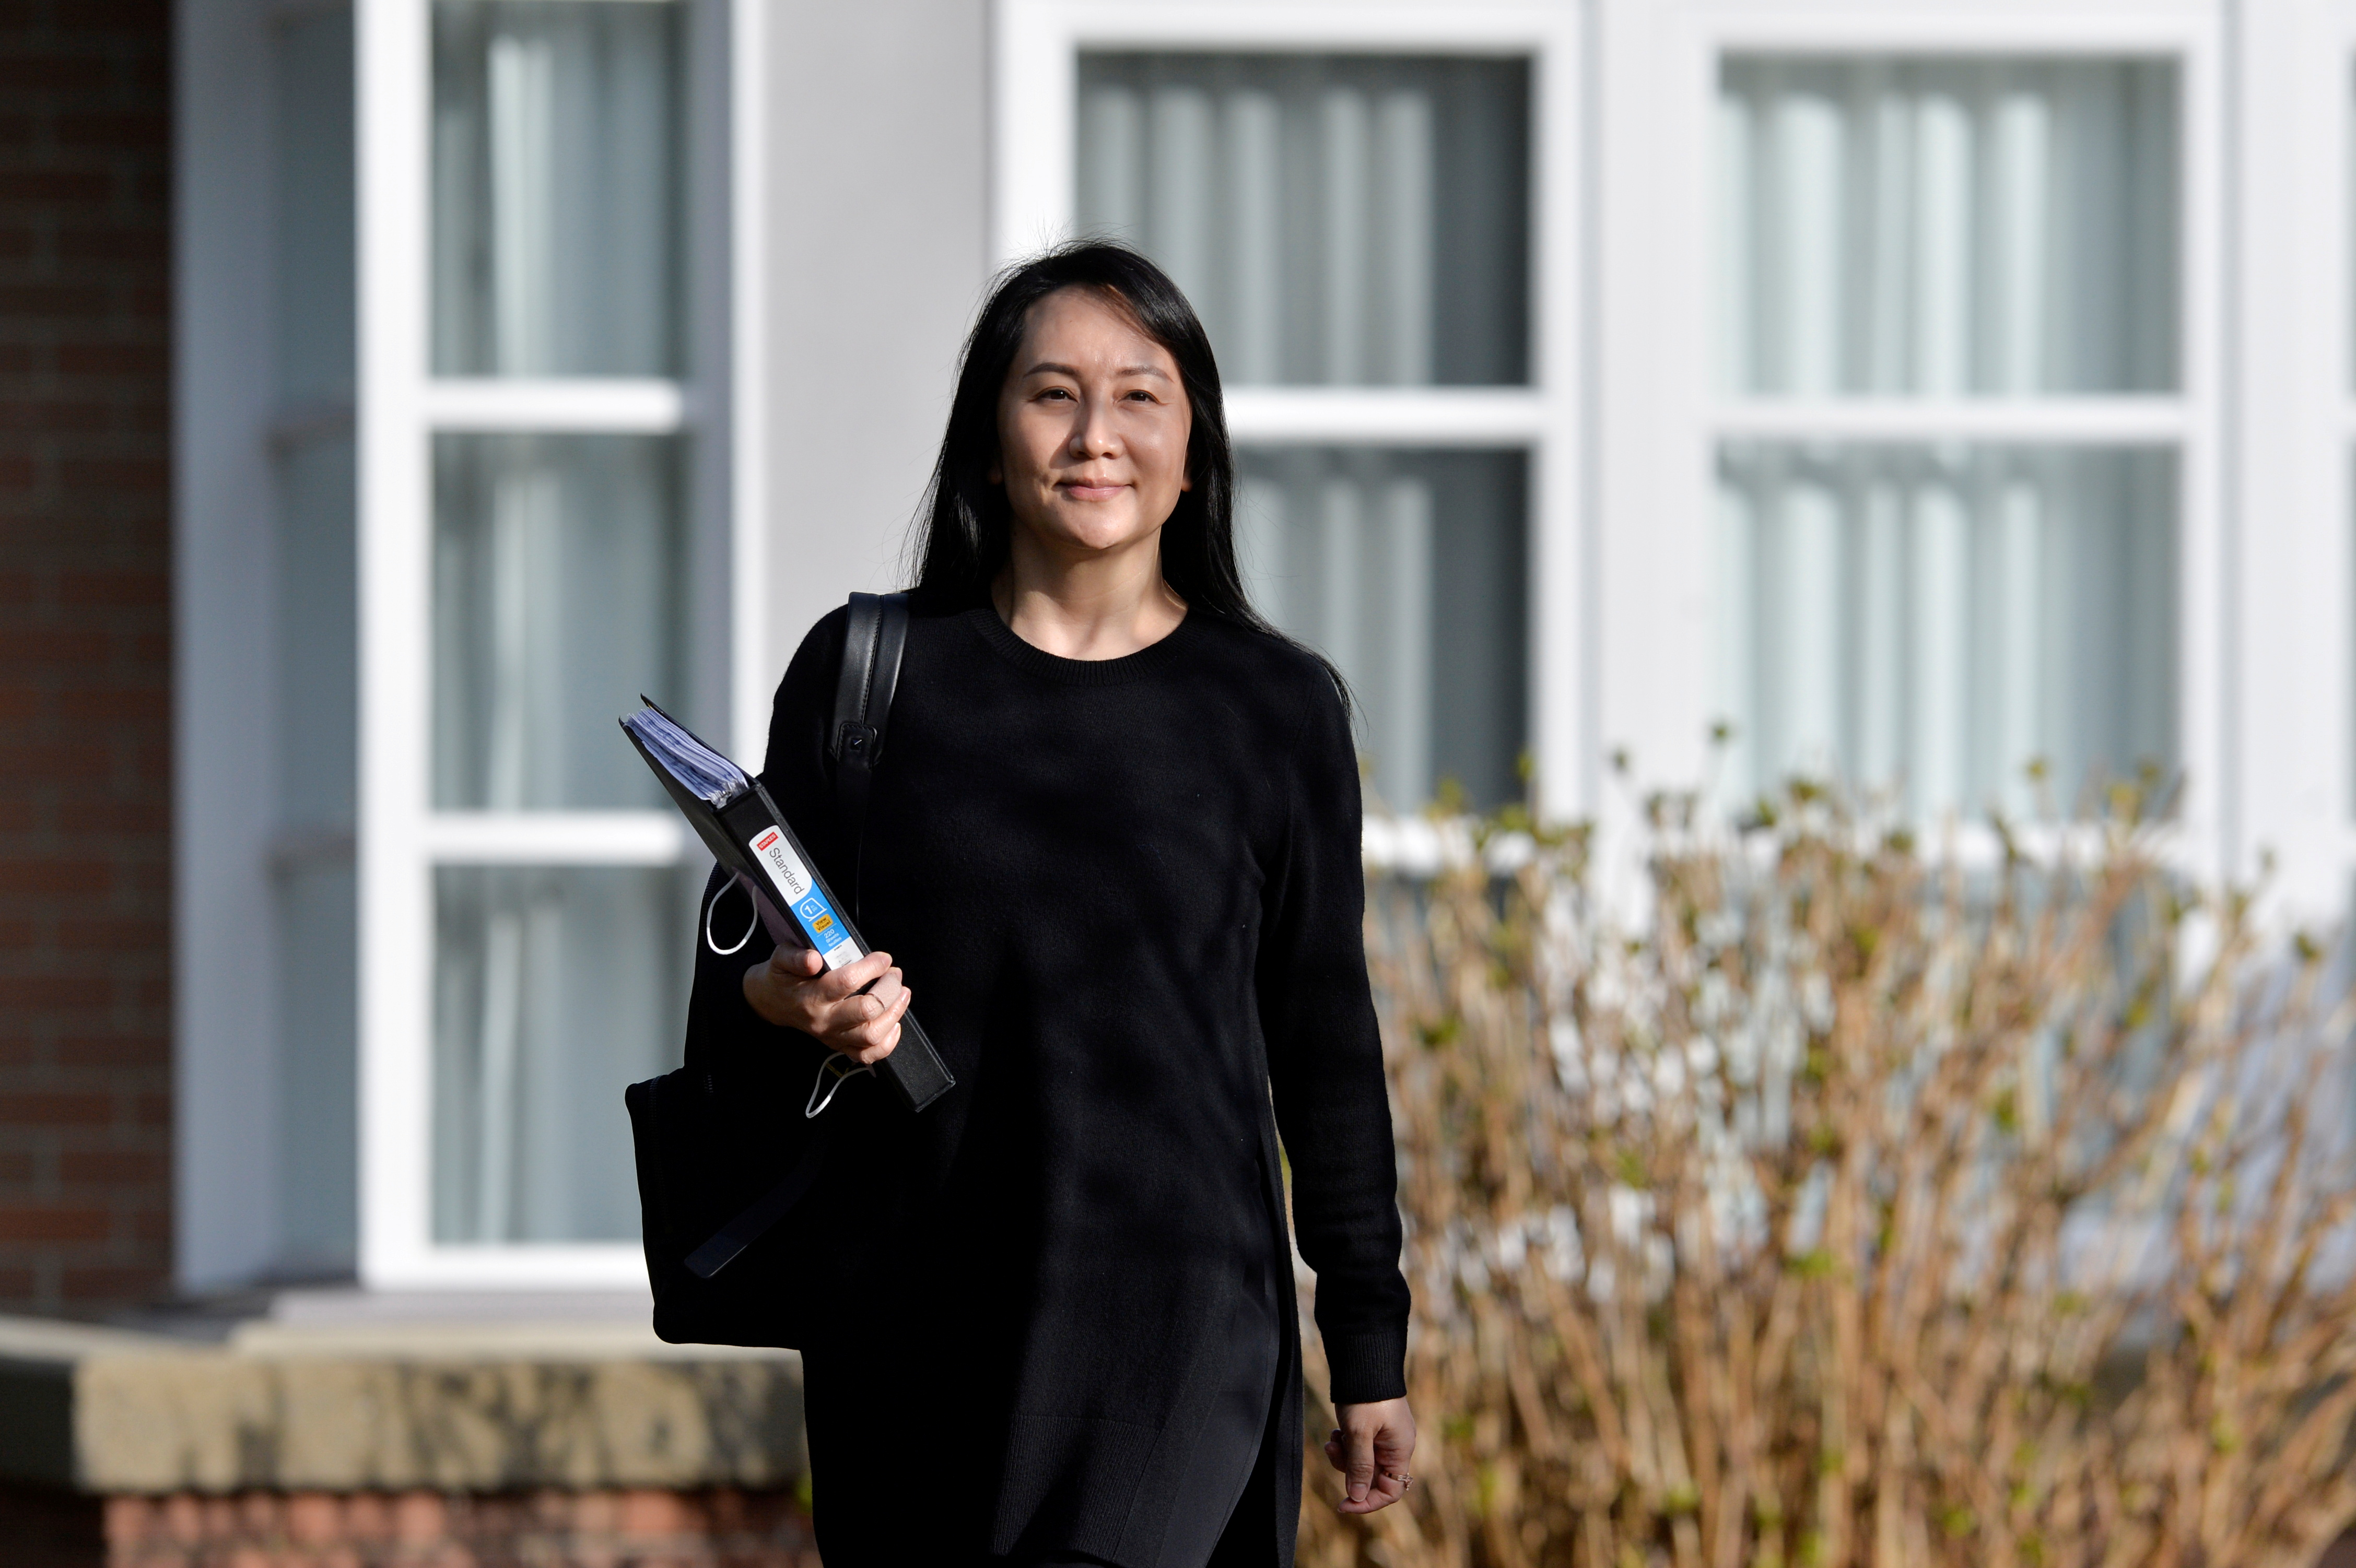 FOTO DE ARCHIVO: la directora financiera de Huawei Technologies, Meng Wanzhou, sale de su casa para asistir a una vista judicial en Vancouver, Canadá, el 22 de marzo de 2021 (Reuters)